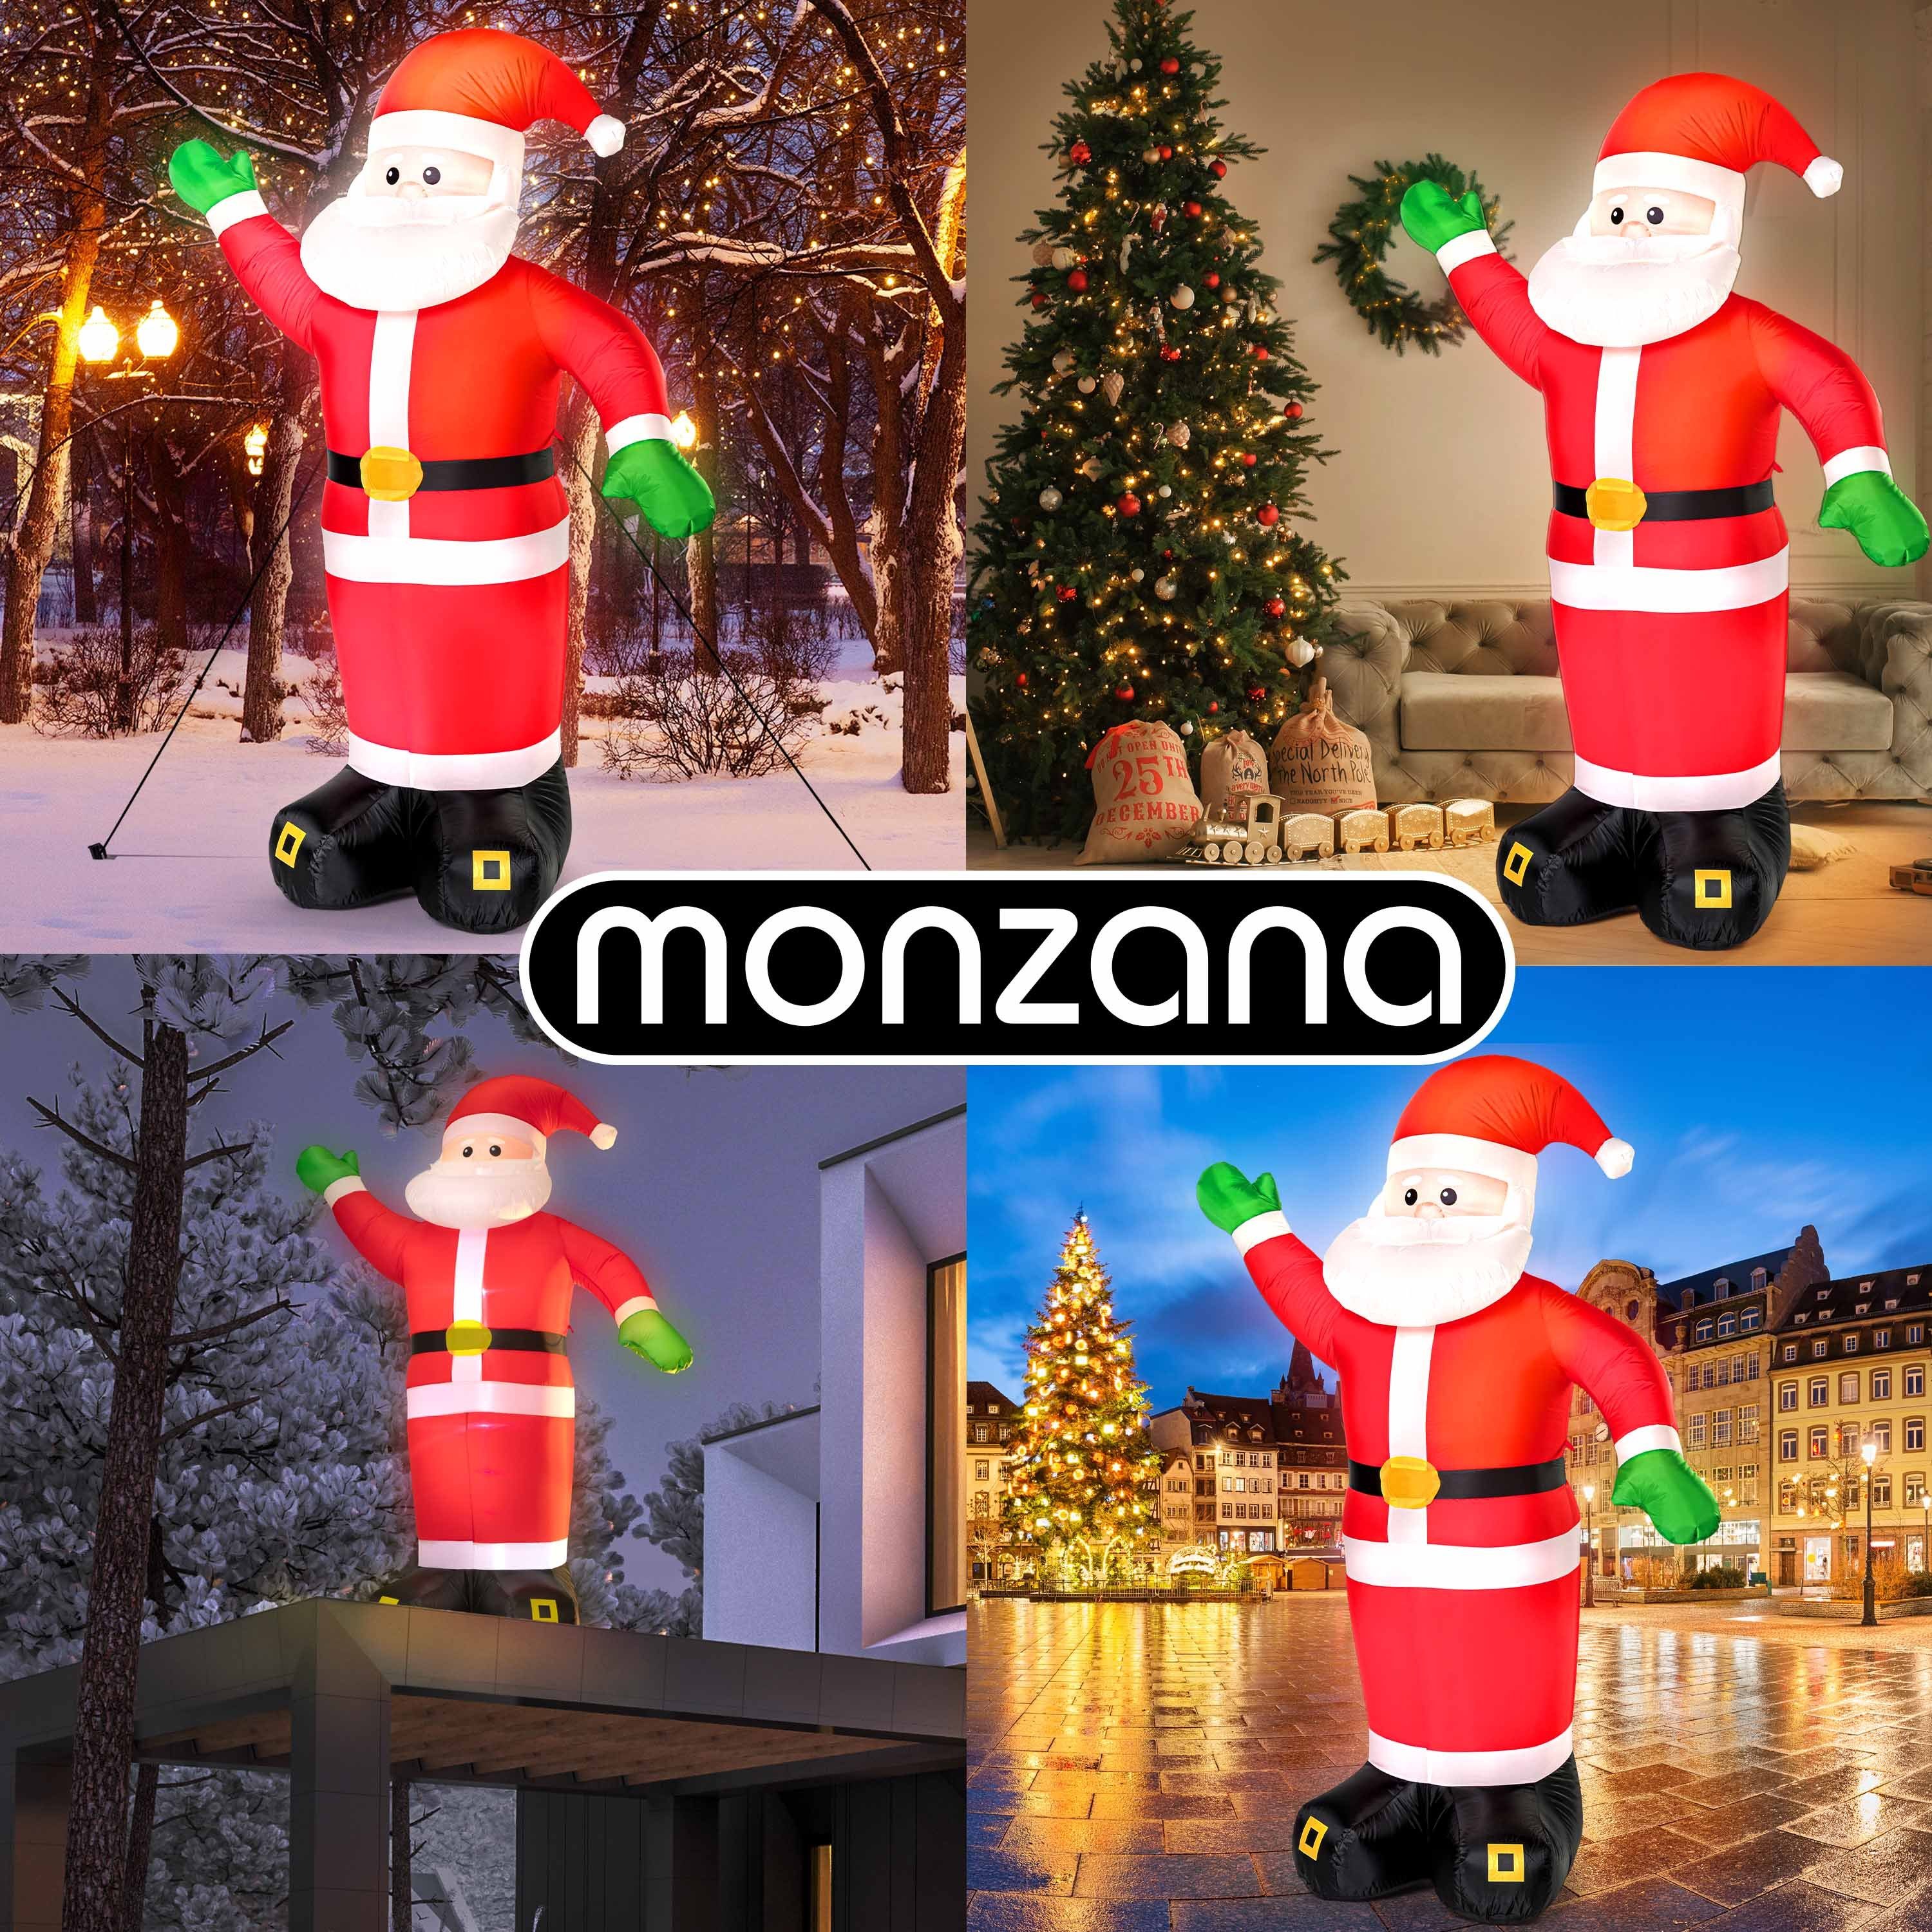 IP44 LED monzana Weihnachtsmann, Außen XXL 250cm Befestigungsmaterial Beleuchtet Aufblasbarer